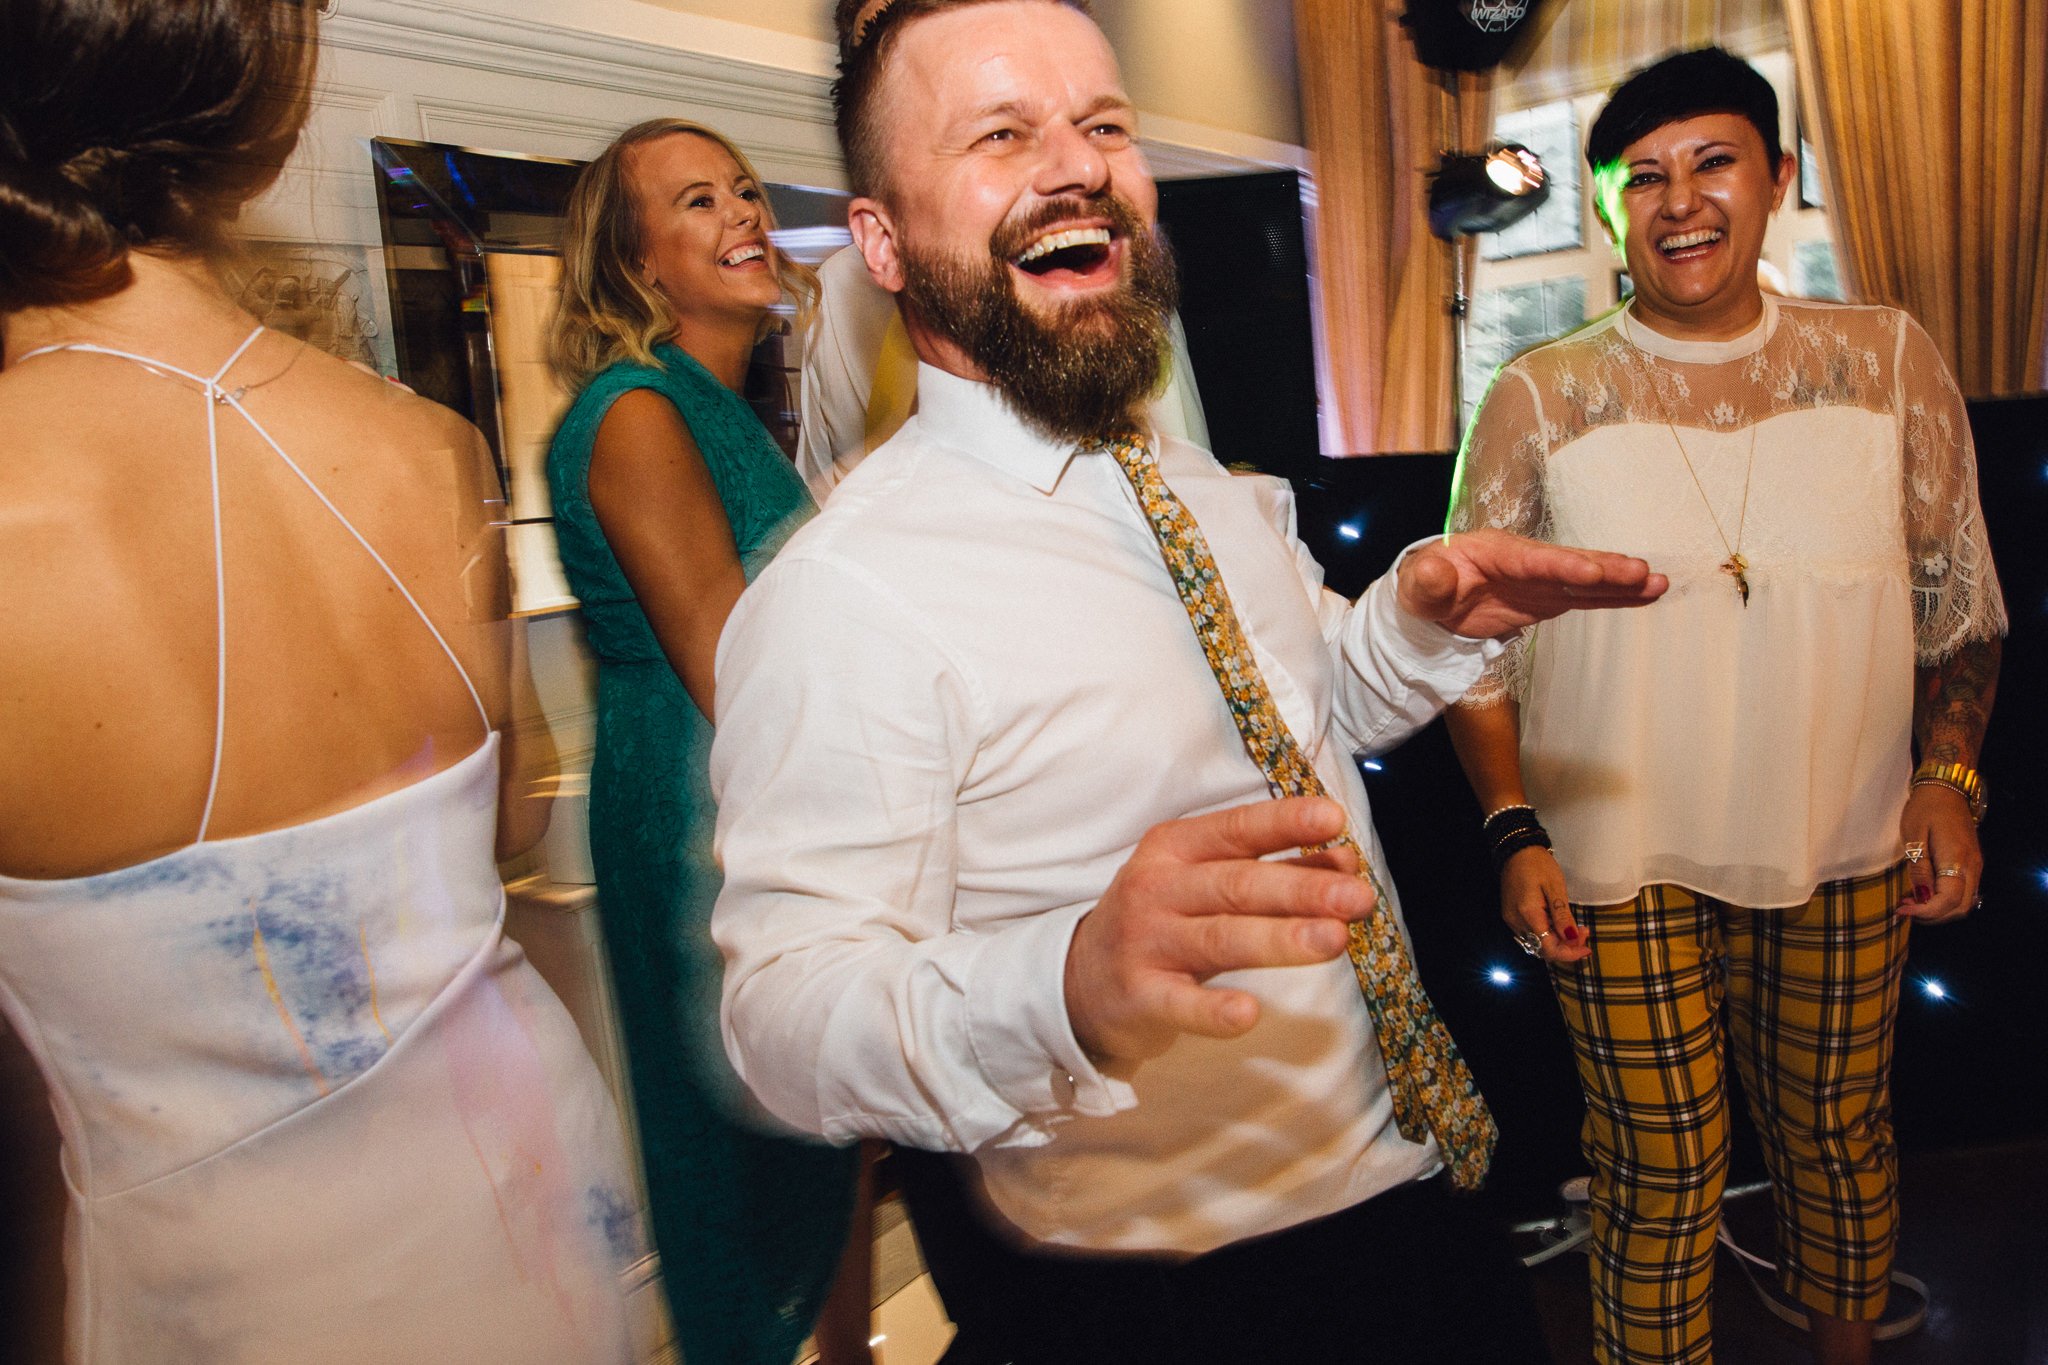  Wedding guest smiling on the dancefloor 